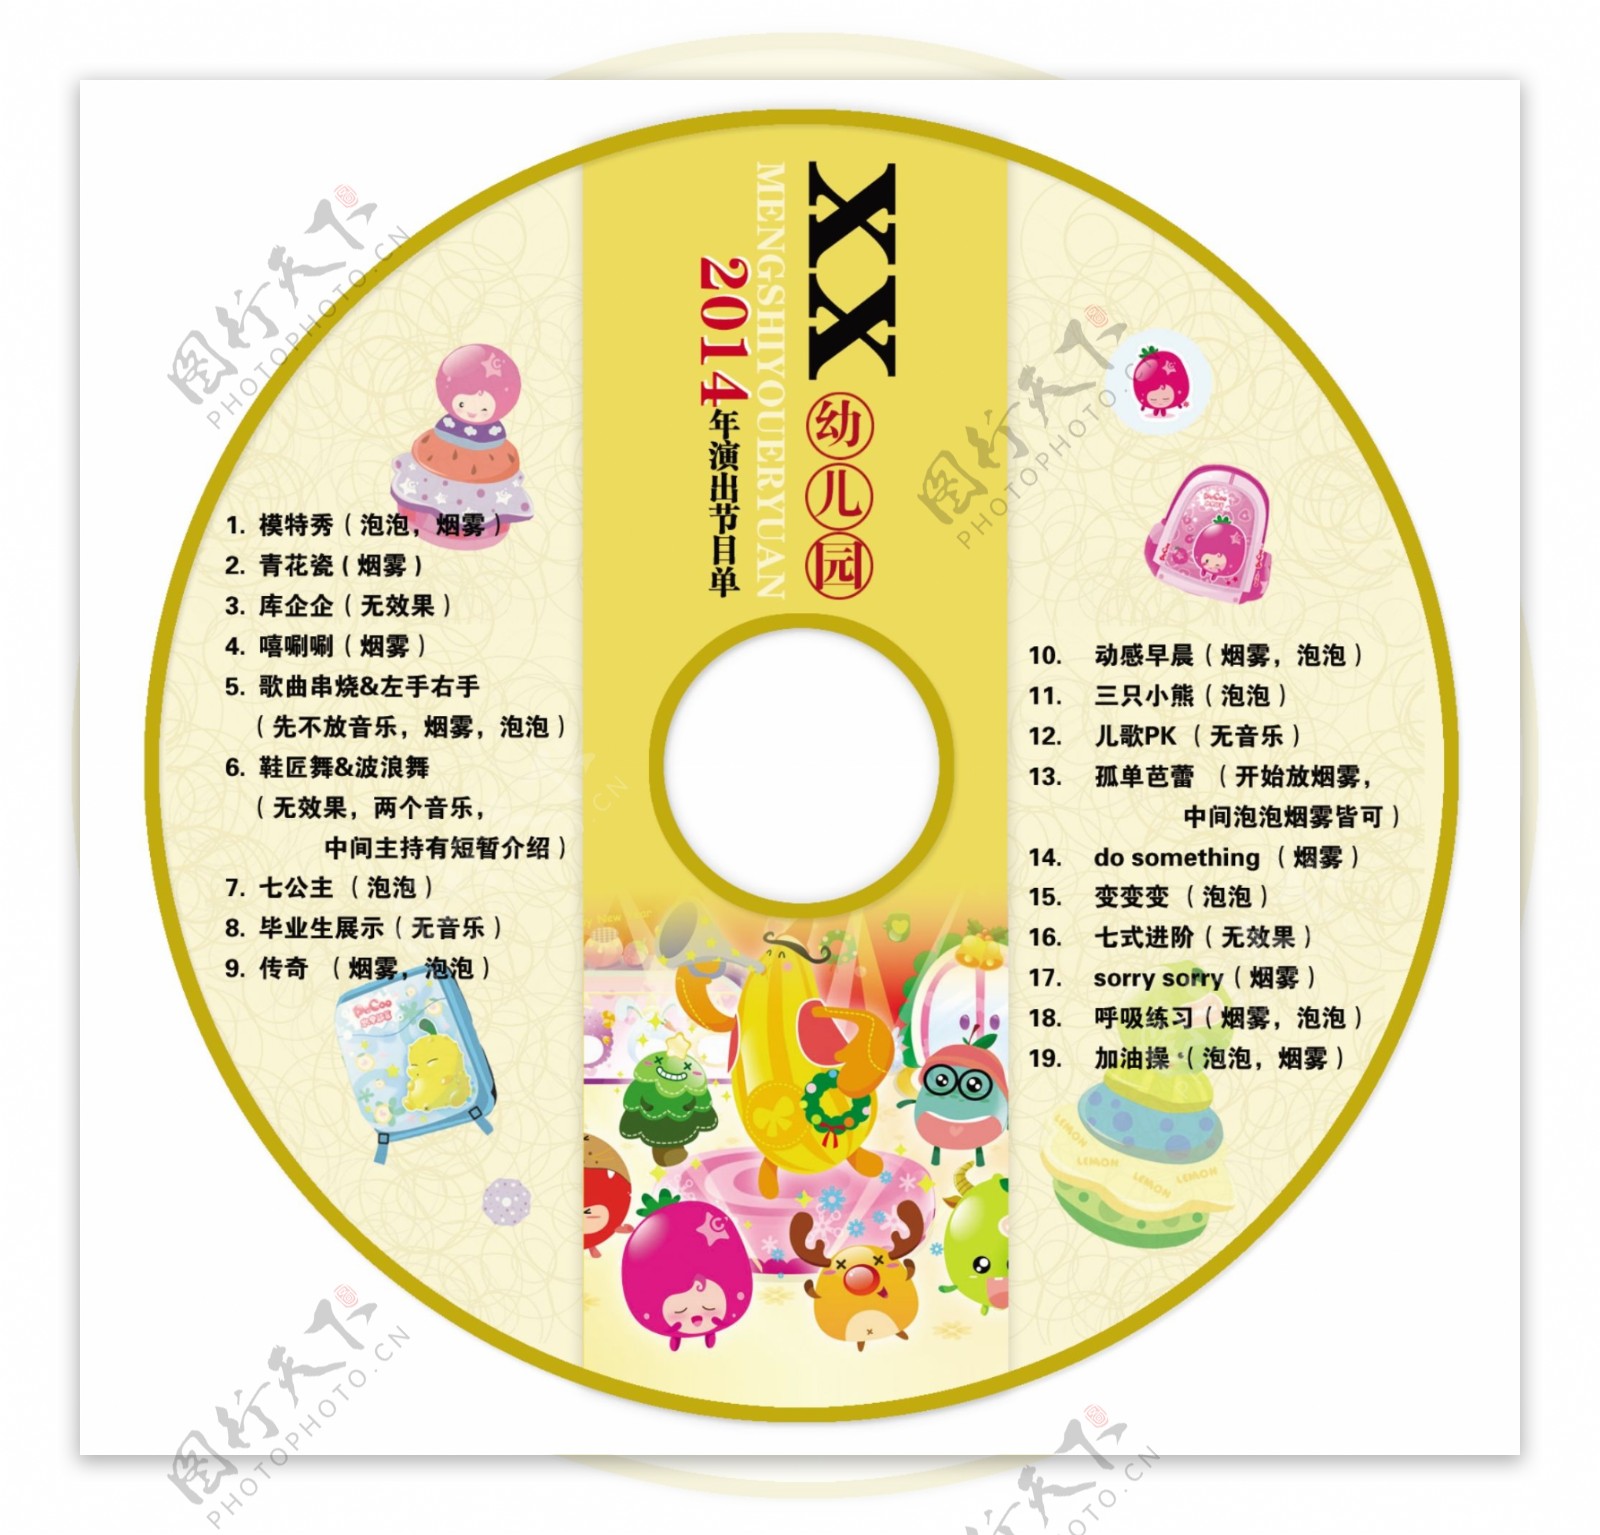 幼儿园CD版式设计图片